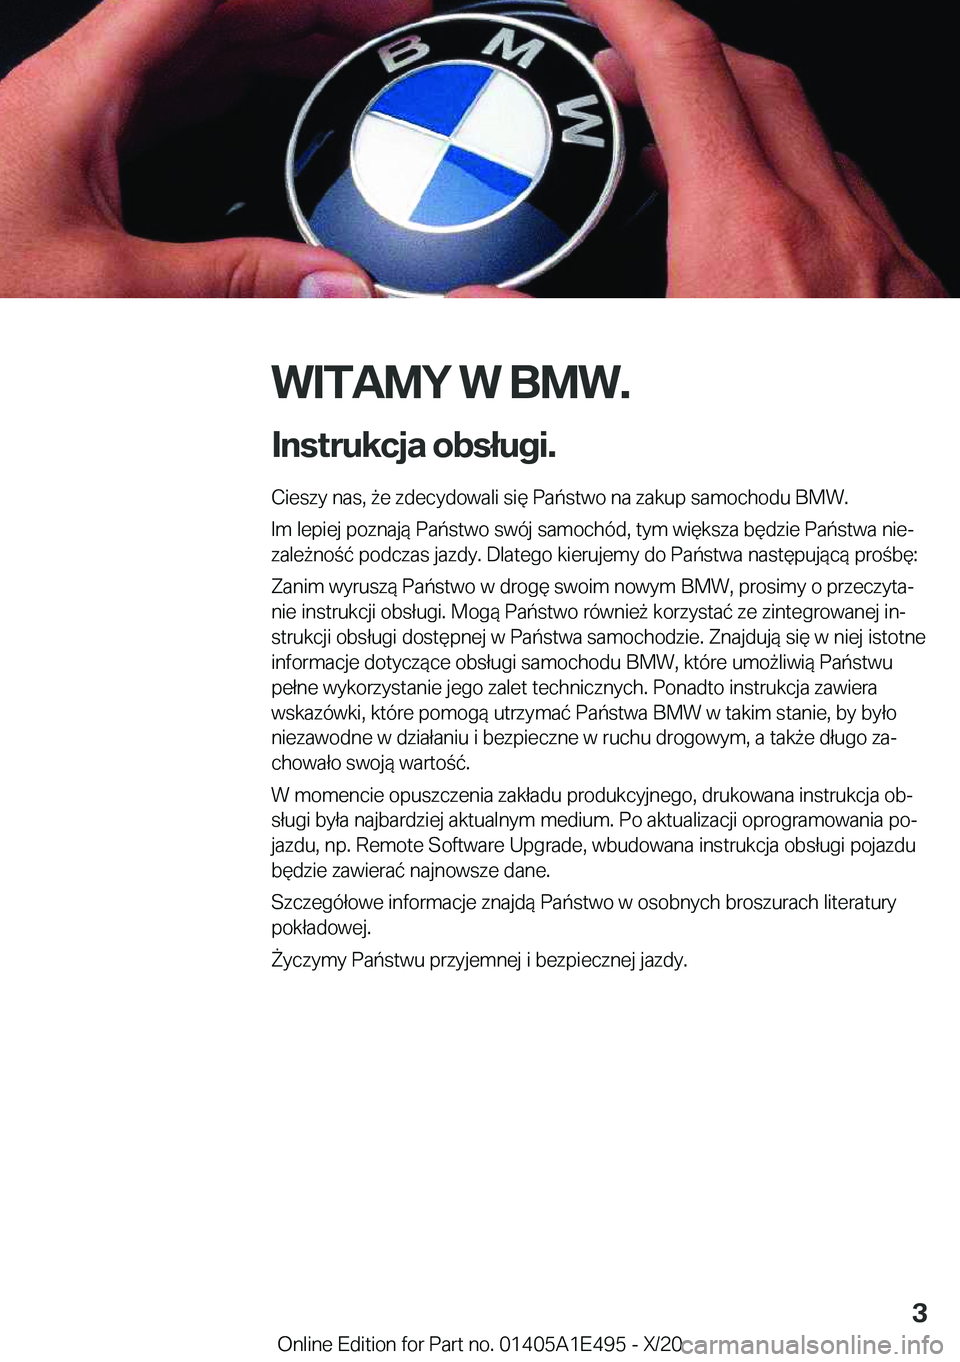 BMW M3 2021  Instrukcja obsługi (in Polish) �W�I�T�A�M�Y��W��B�M�W�.
�I�n�s�t�r�u�k�c�j�a��o�b�s�ł�u�g�i�. �C�i�e�s�z�y��n�a�s�,�9�e��z�d�e�c�y�d�o�w�a�l�i��s�i�